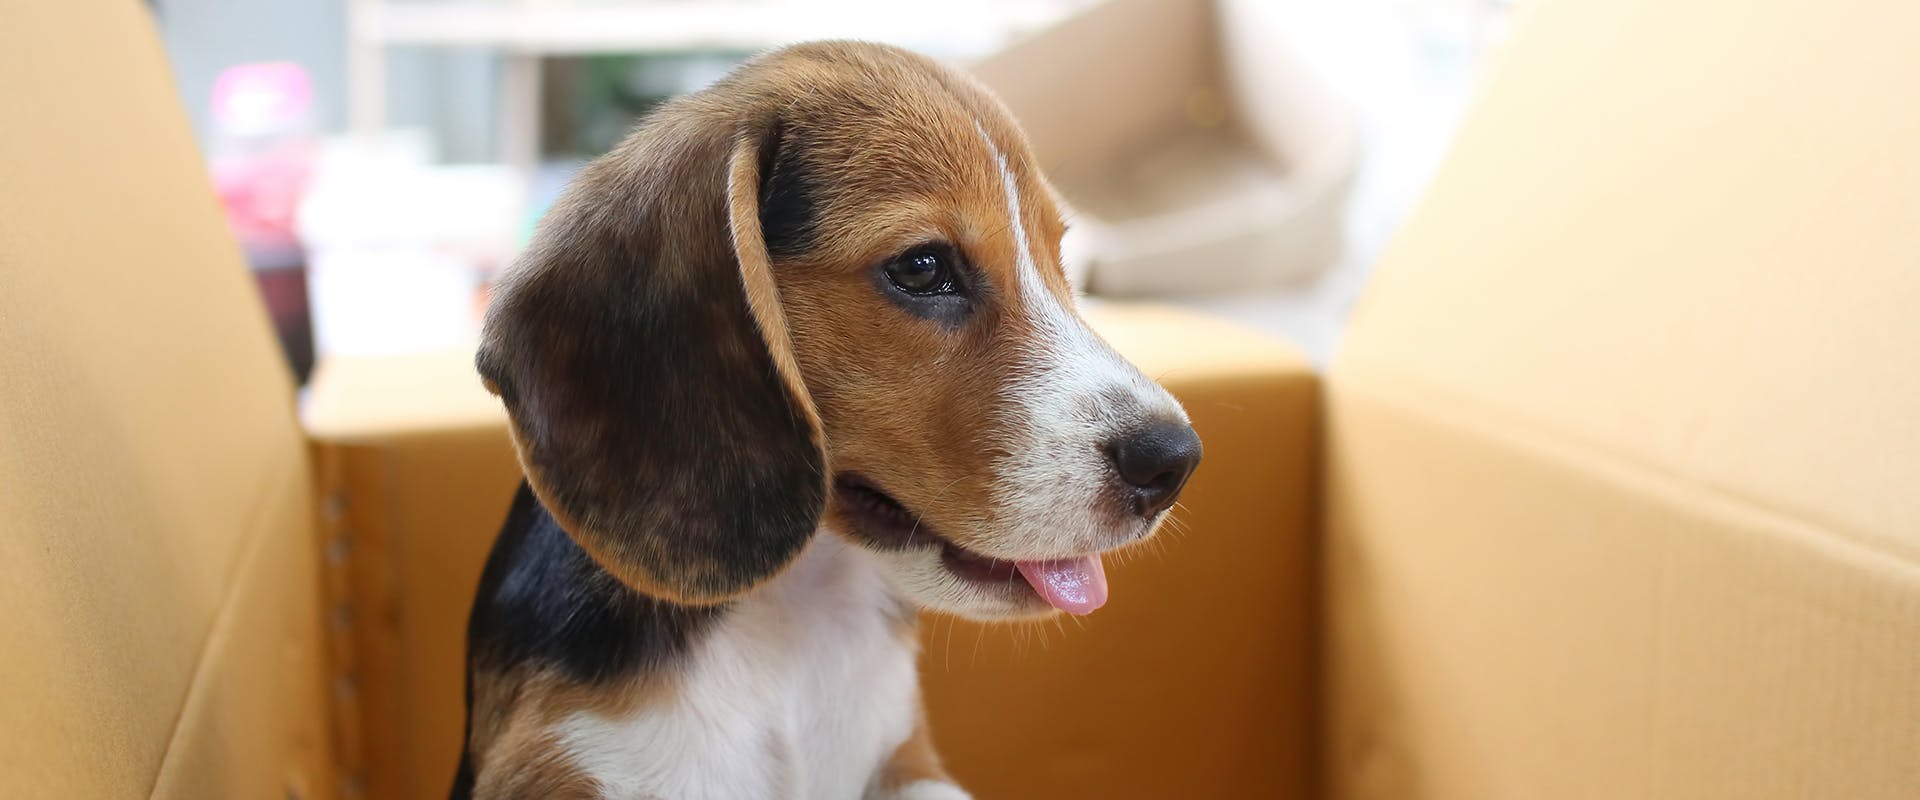 A cute Beagle puppy sitting in a cardboard box